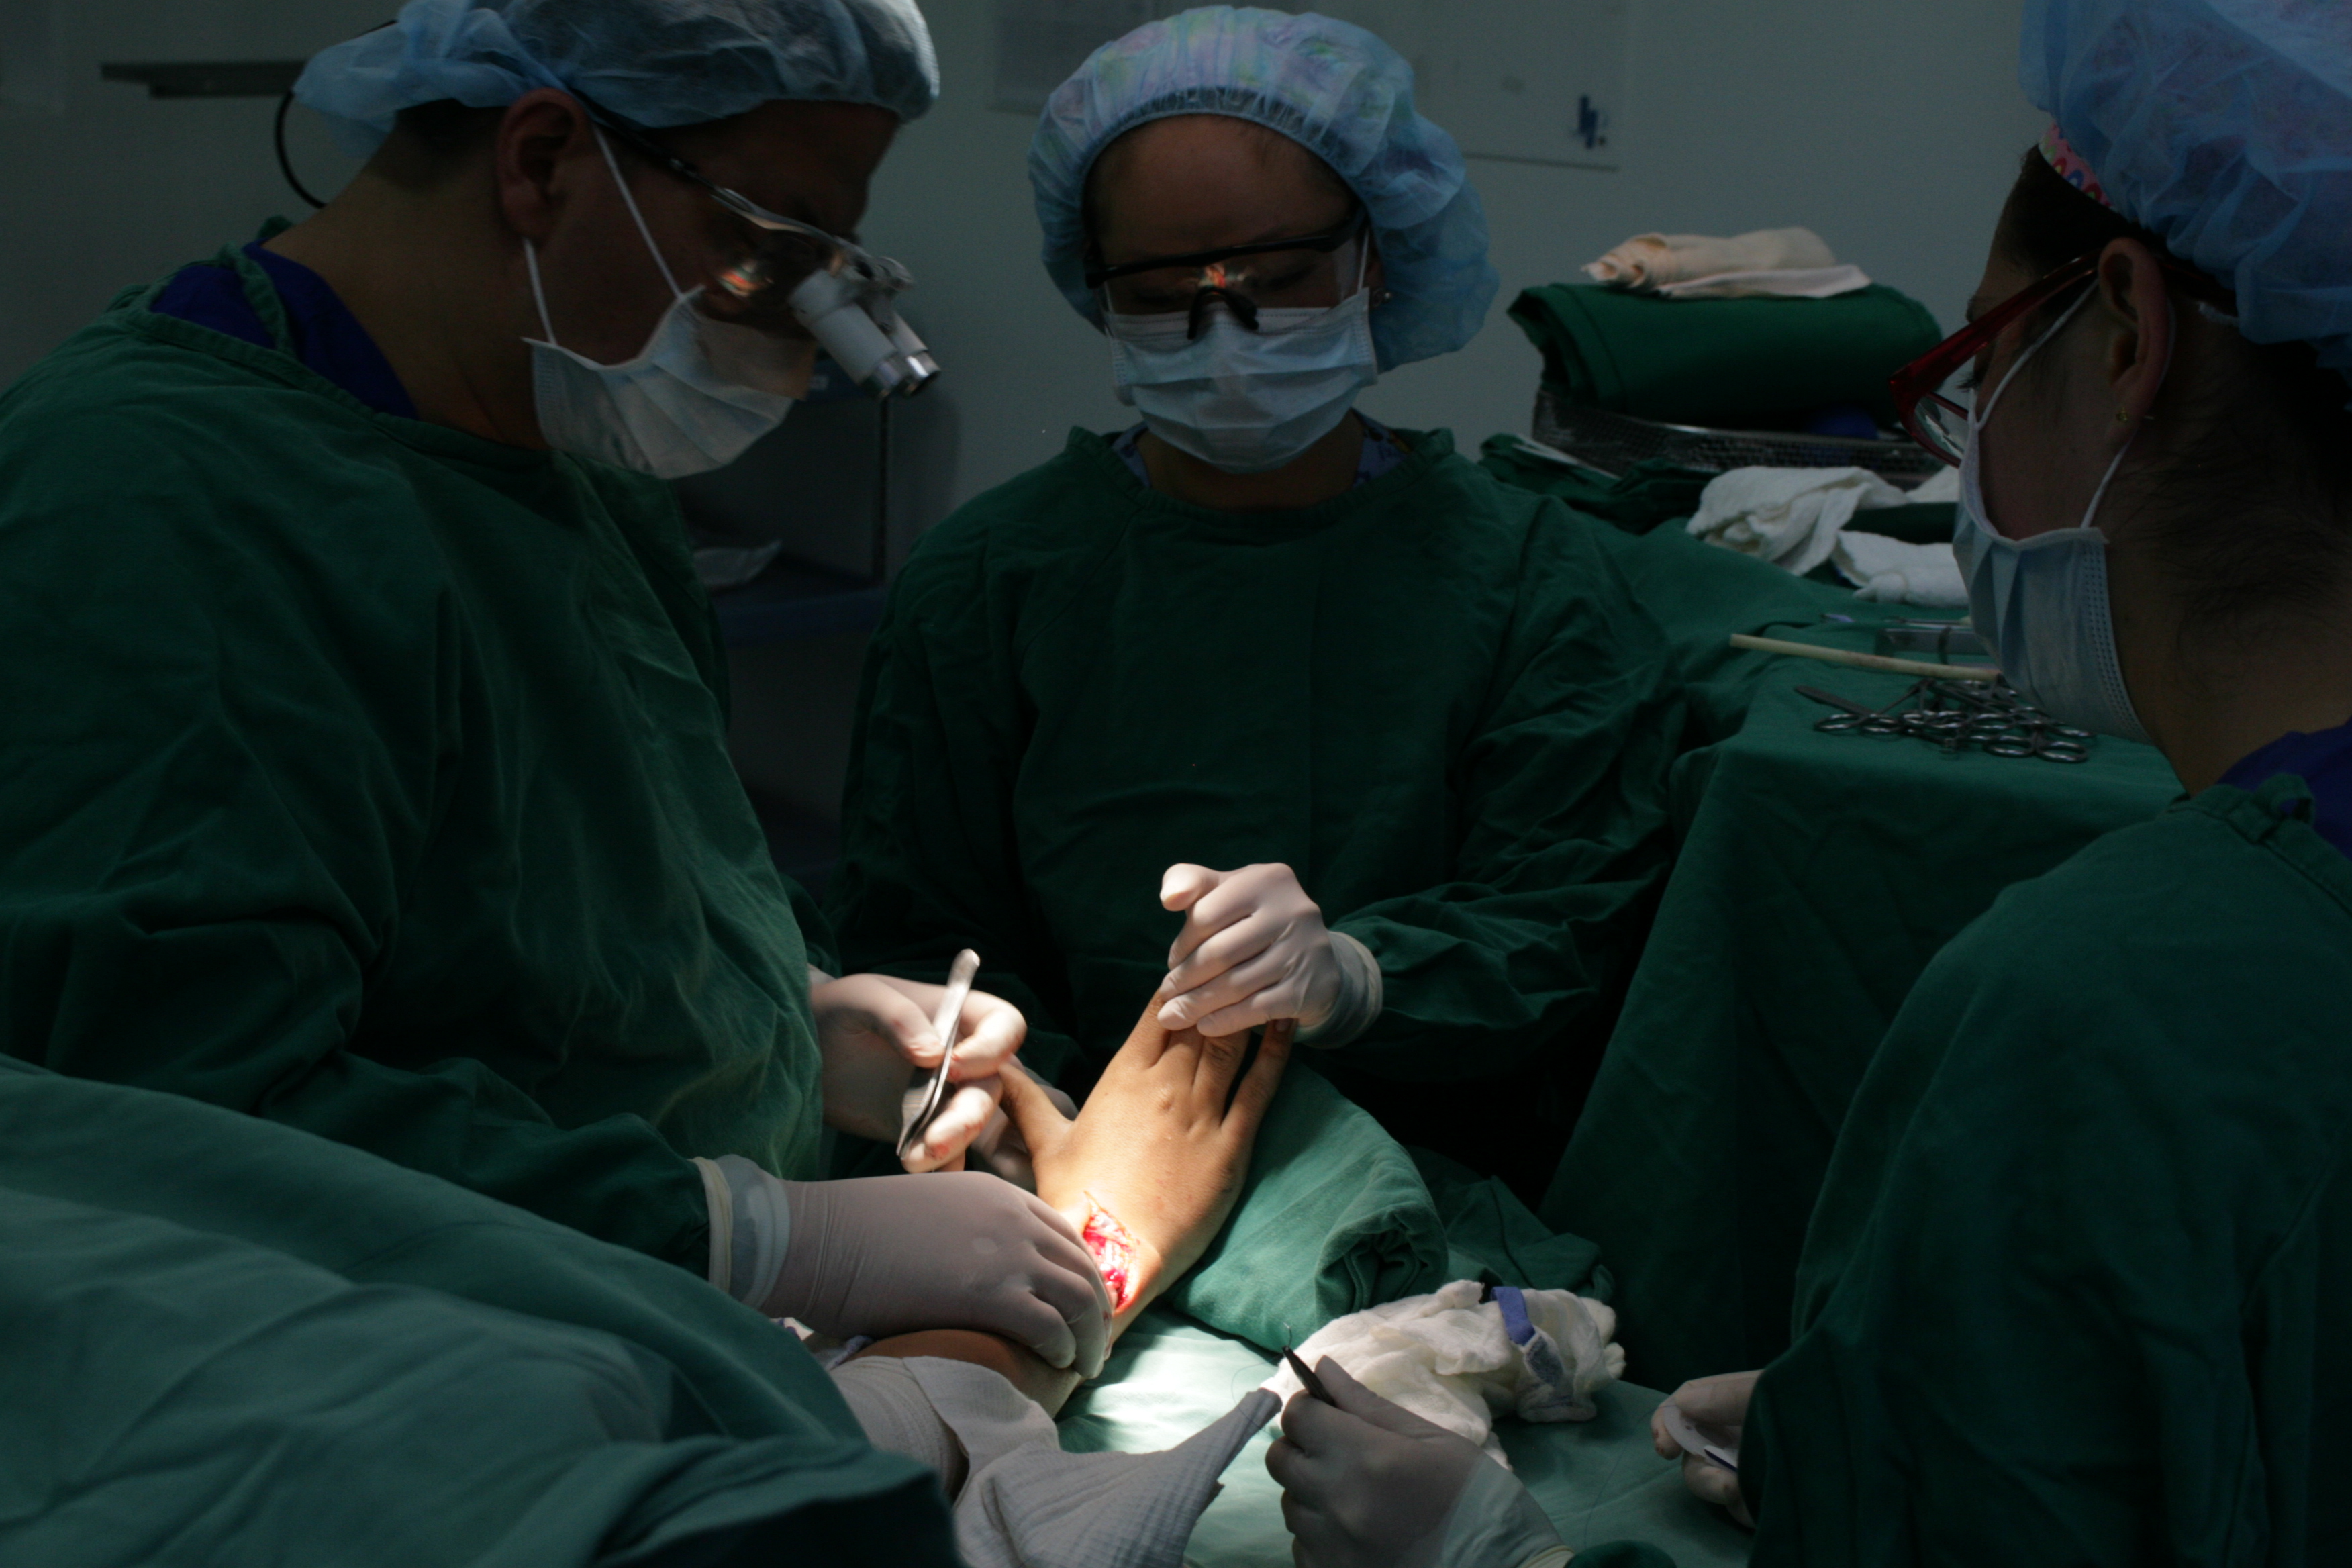 Cirugía general consulta externa Fundació hospital san carlos